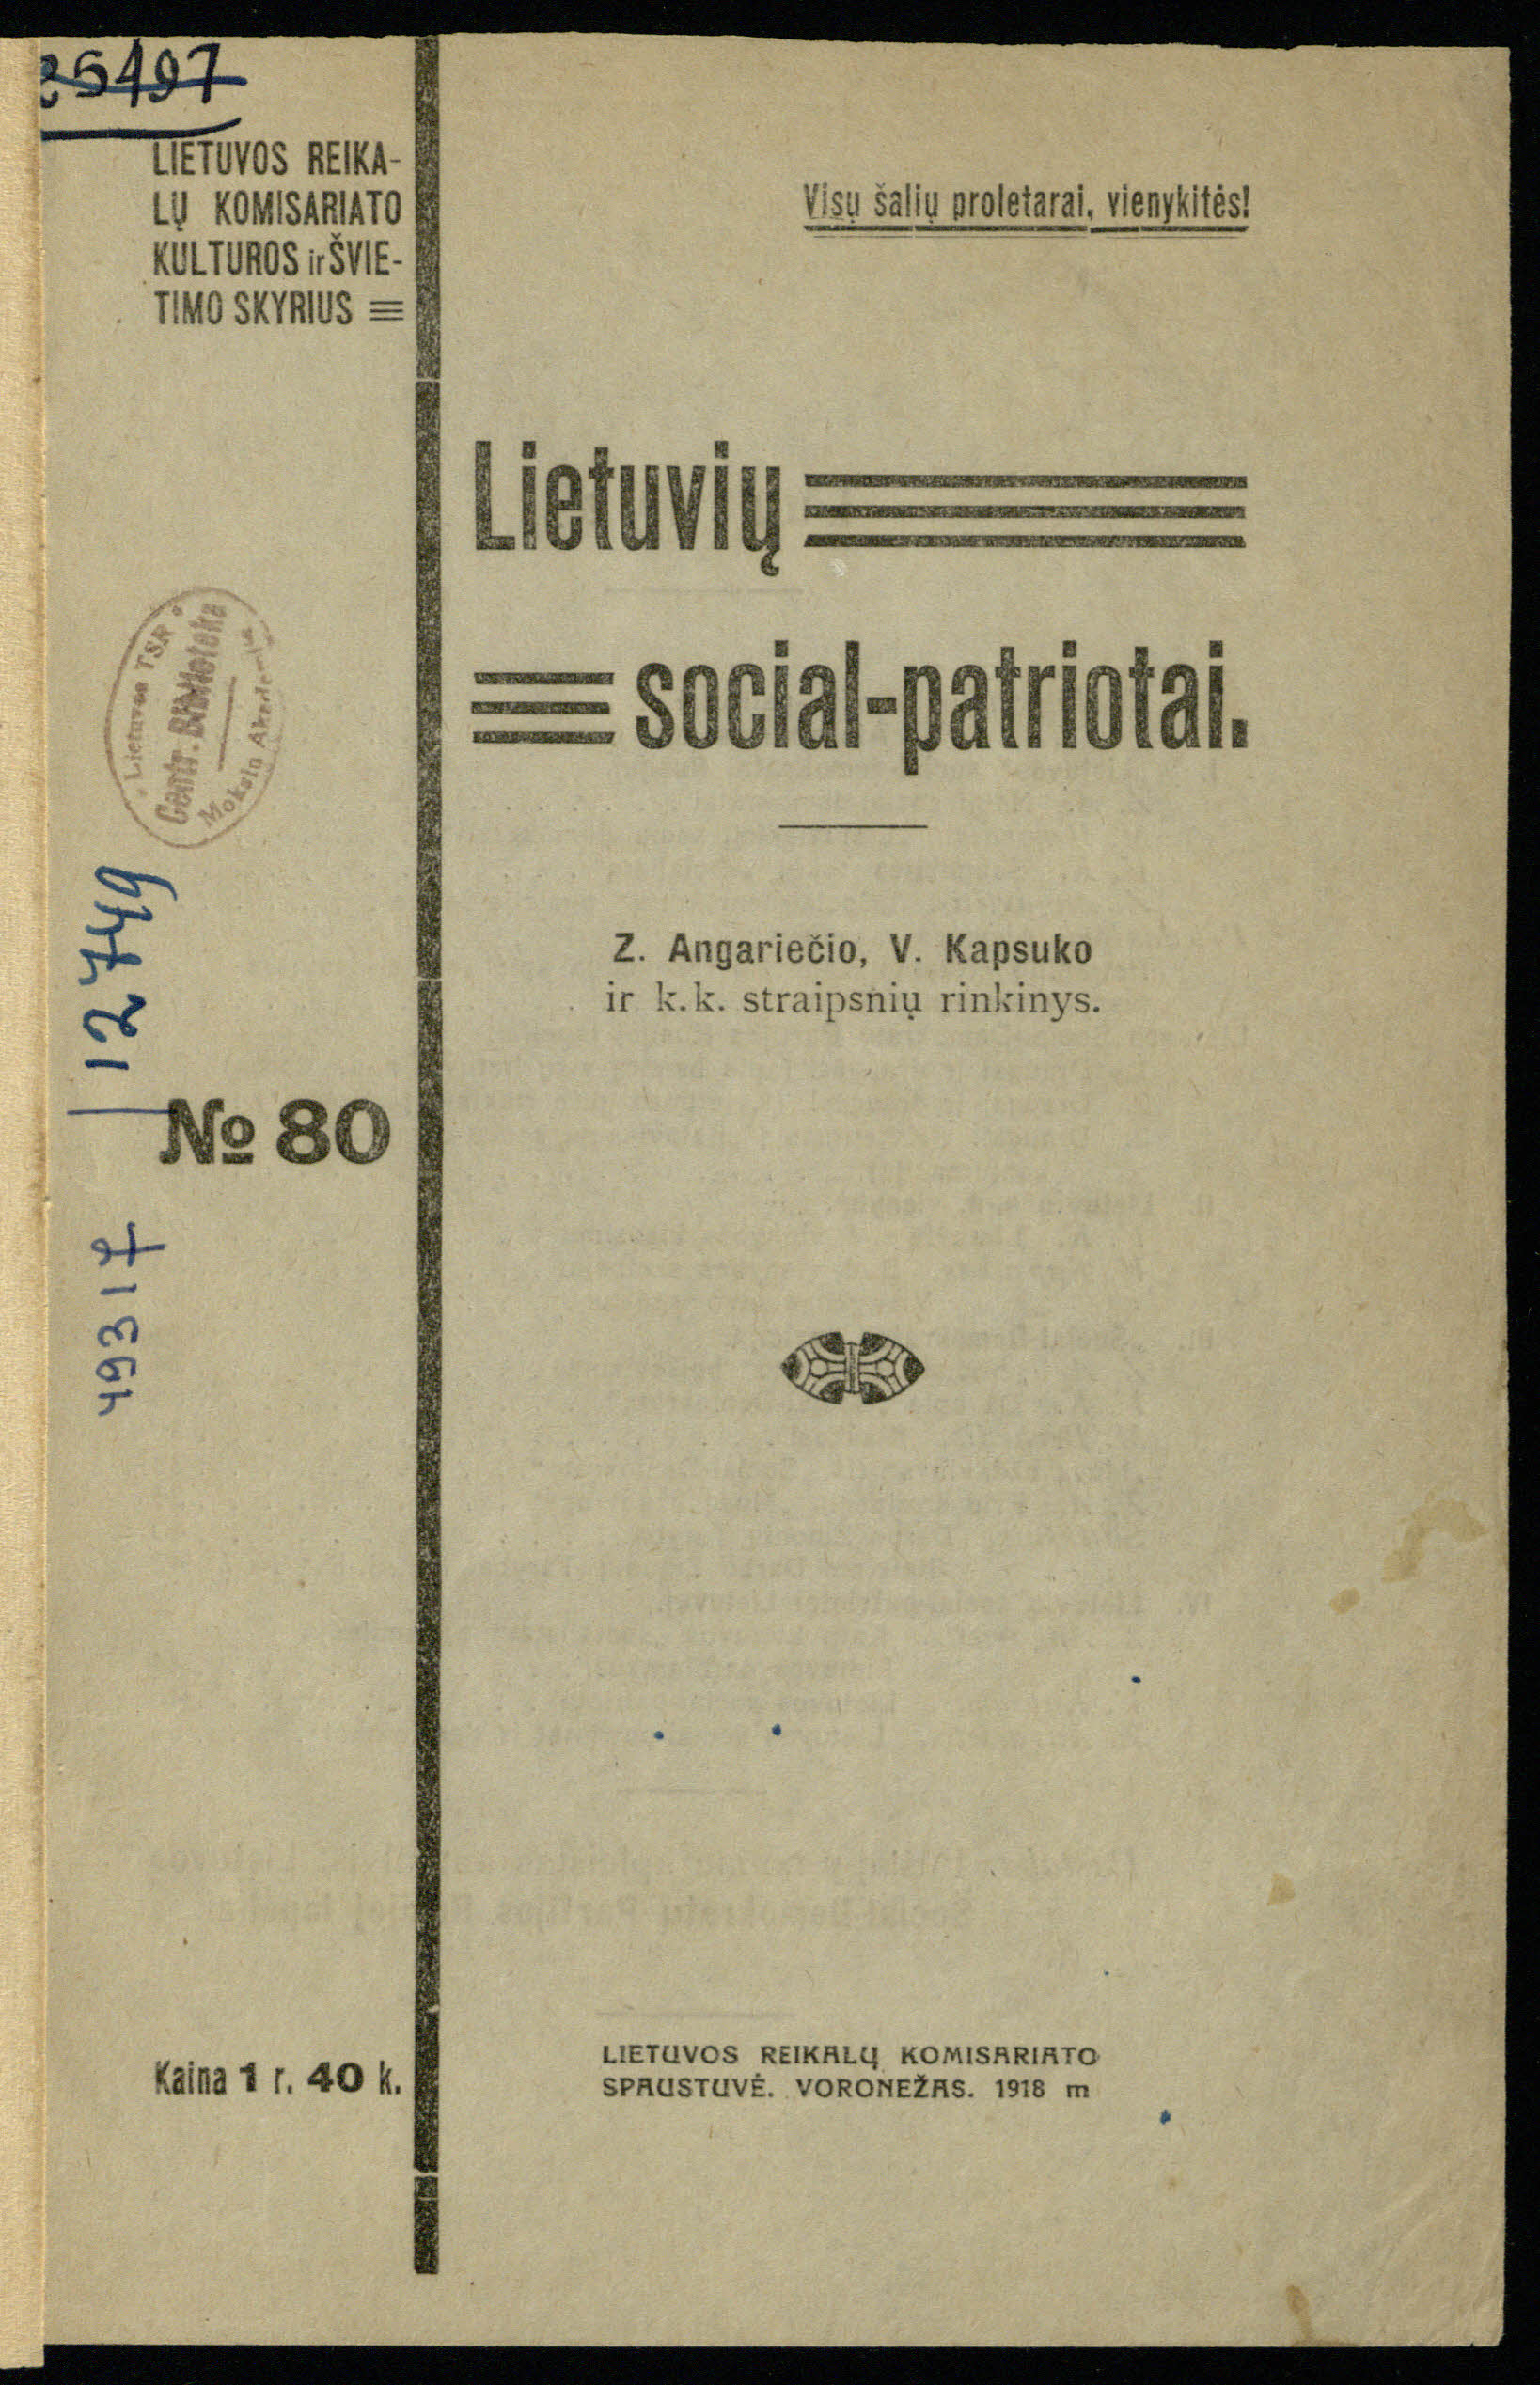 Zigmo Angariečio ir Vinco Kapsuko straipsnių rinkinys <b>Lietuvių social-patriotai</b> (Voronežas, 1918)